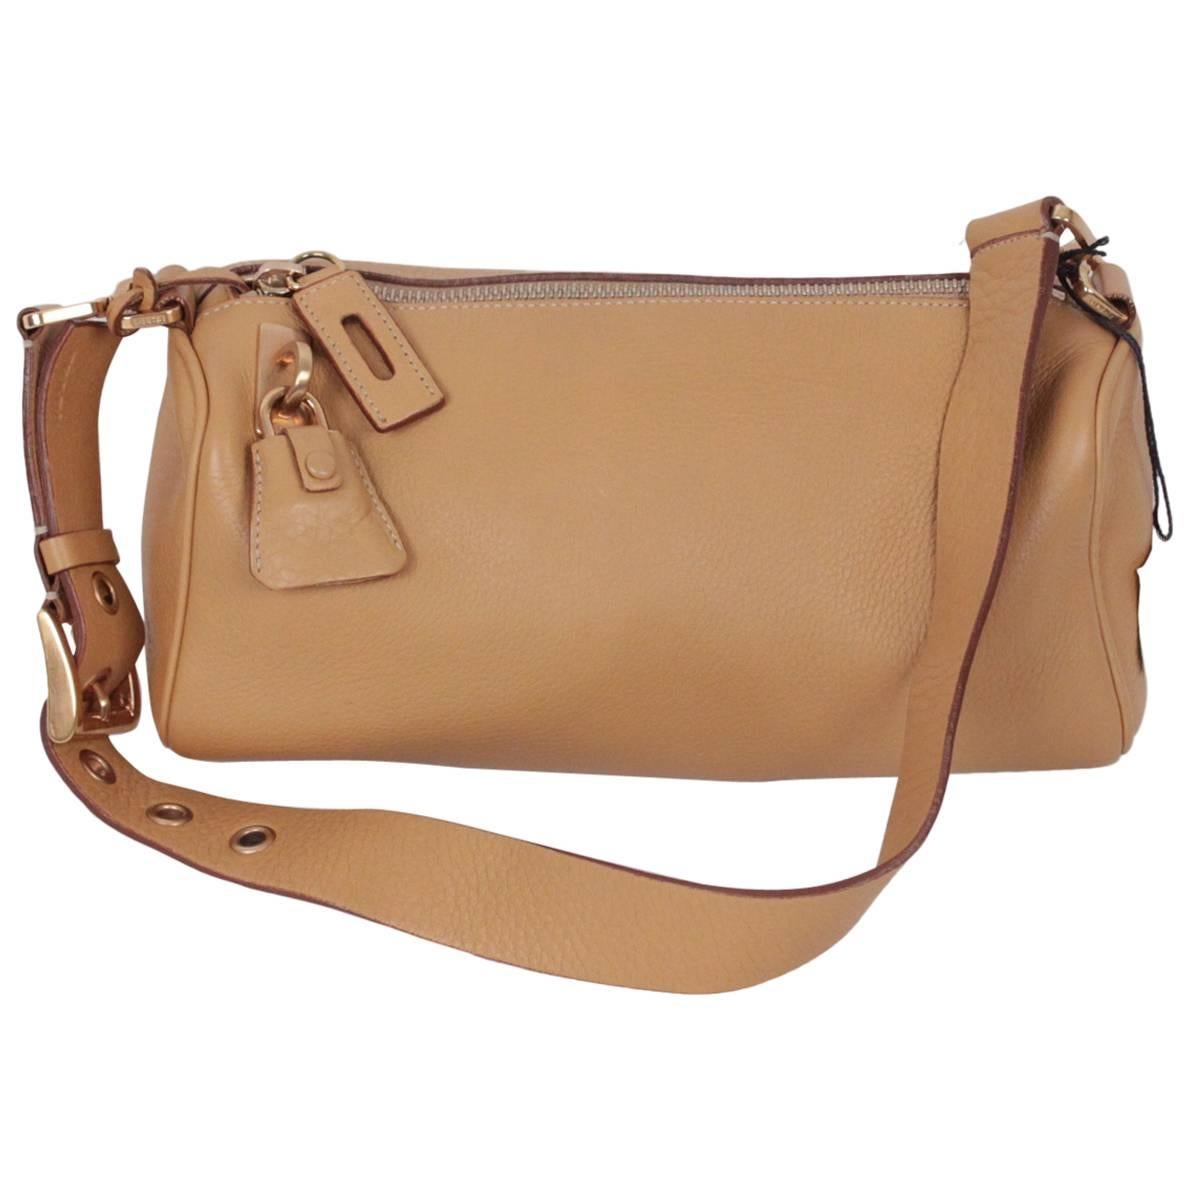 PRADA Tan Leather SHOULDER BAG Handbag w/ PADLOCK